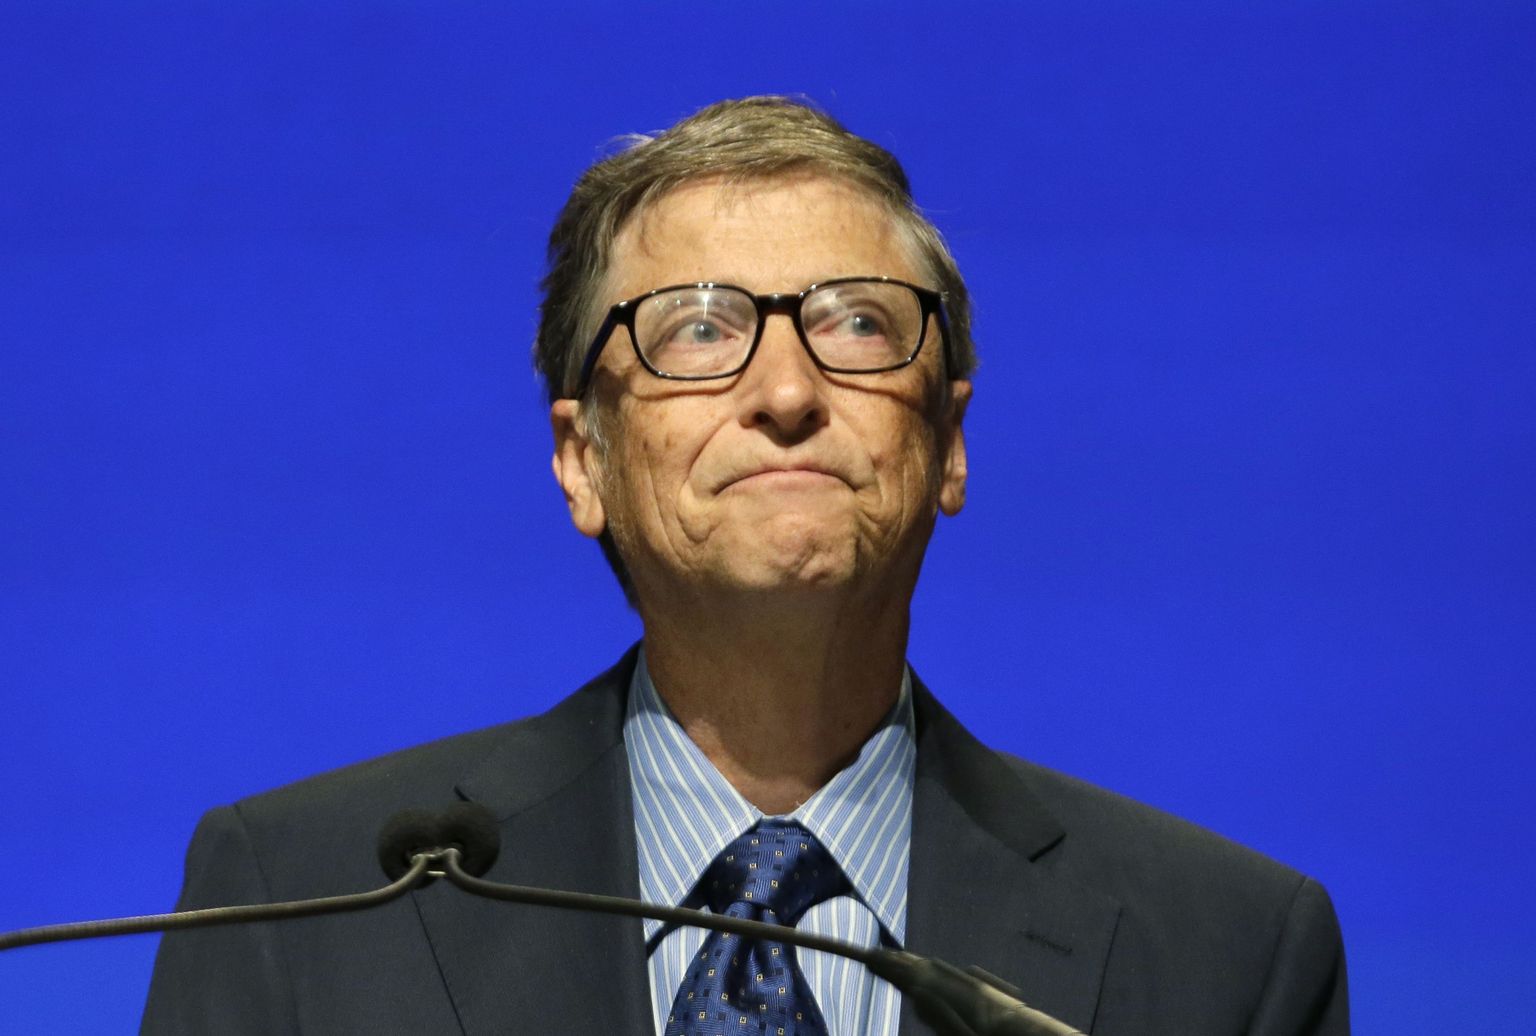 Bloombergi arvutuste kohaselt on praegu maailma rikkaim inimene Bill Gates.